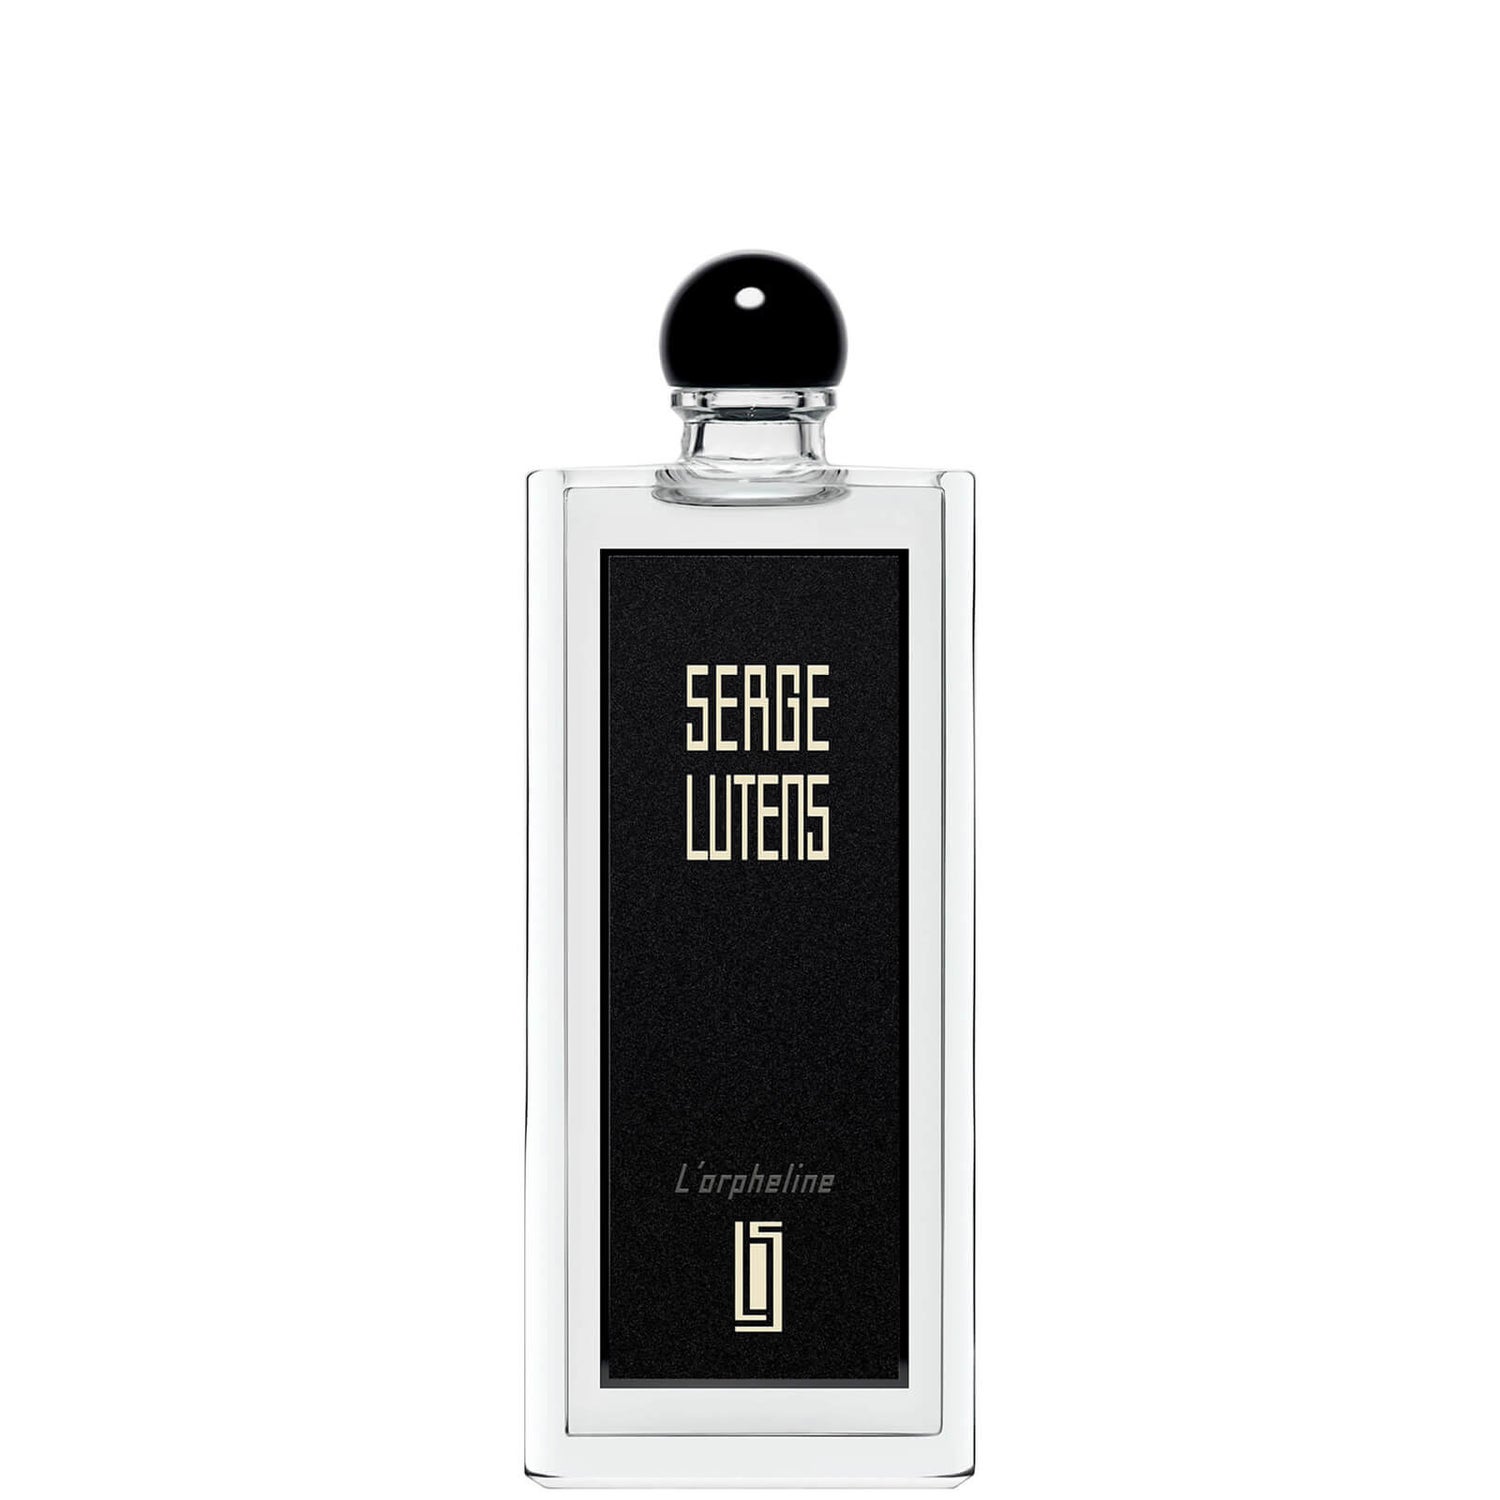 Serge Lutens L'orpheline Eau de Parfum - 50ml